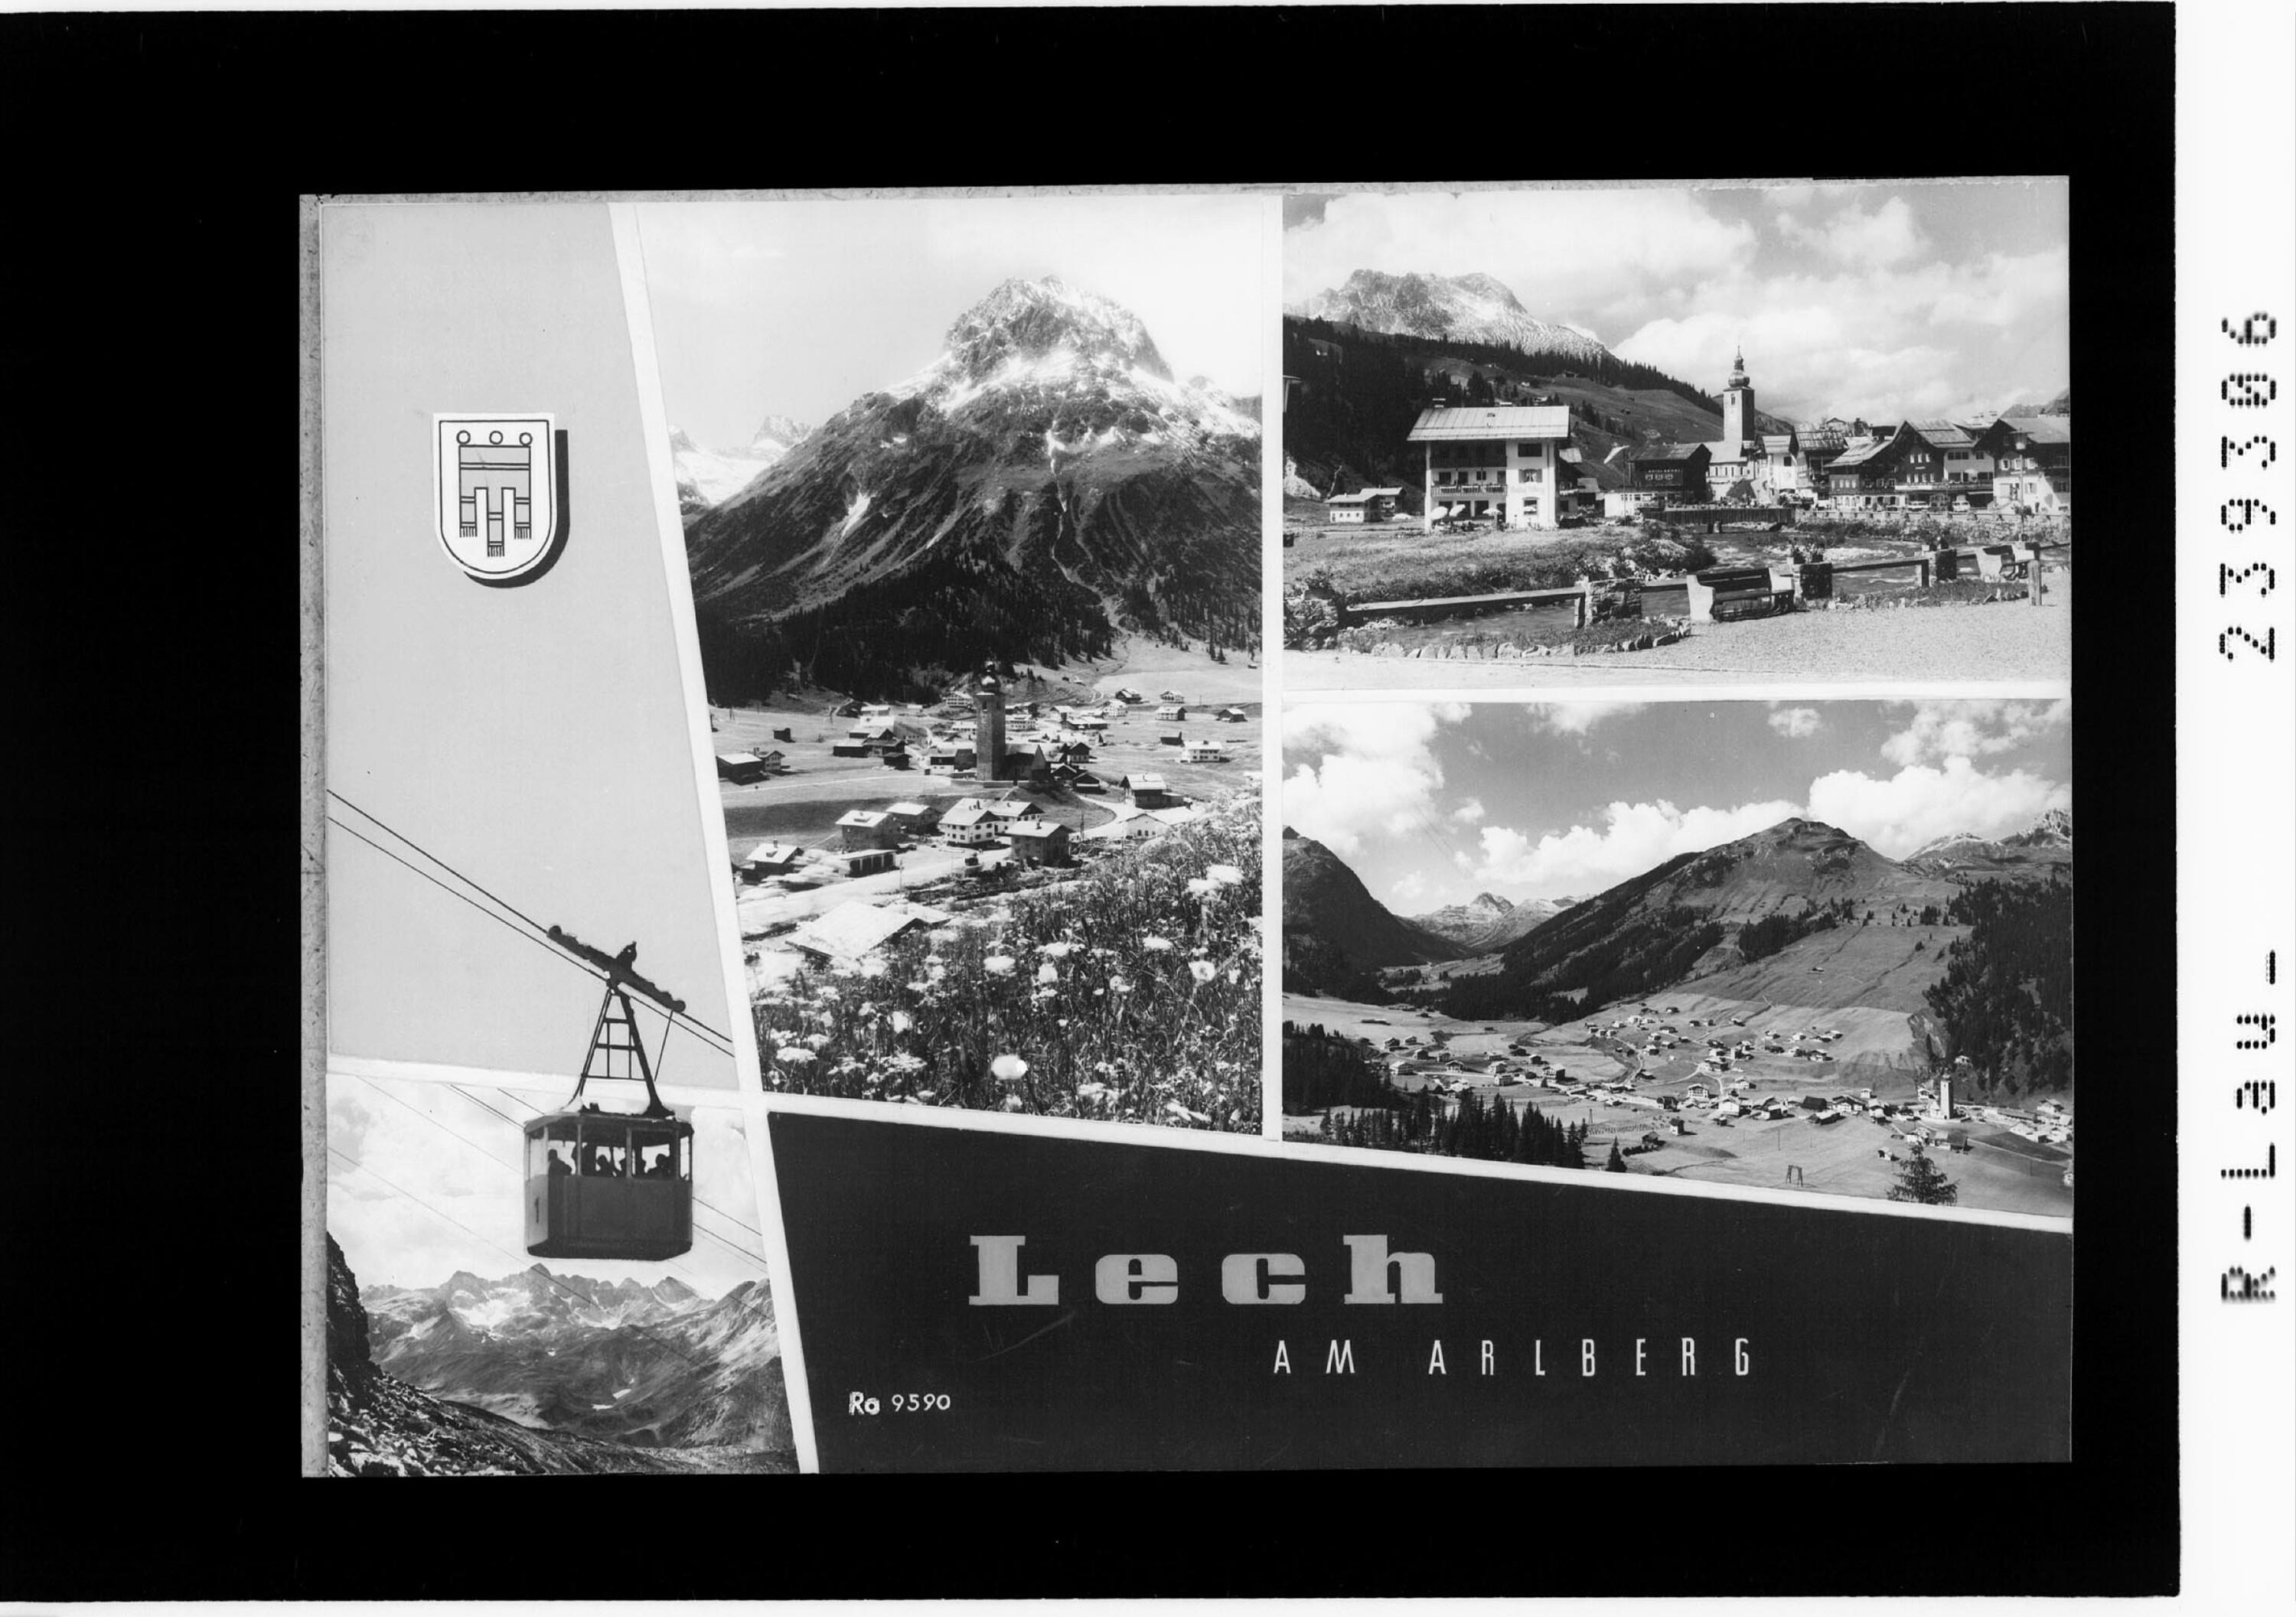 Lech am Arlberg></div>


    <hr>
    <div class=